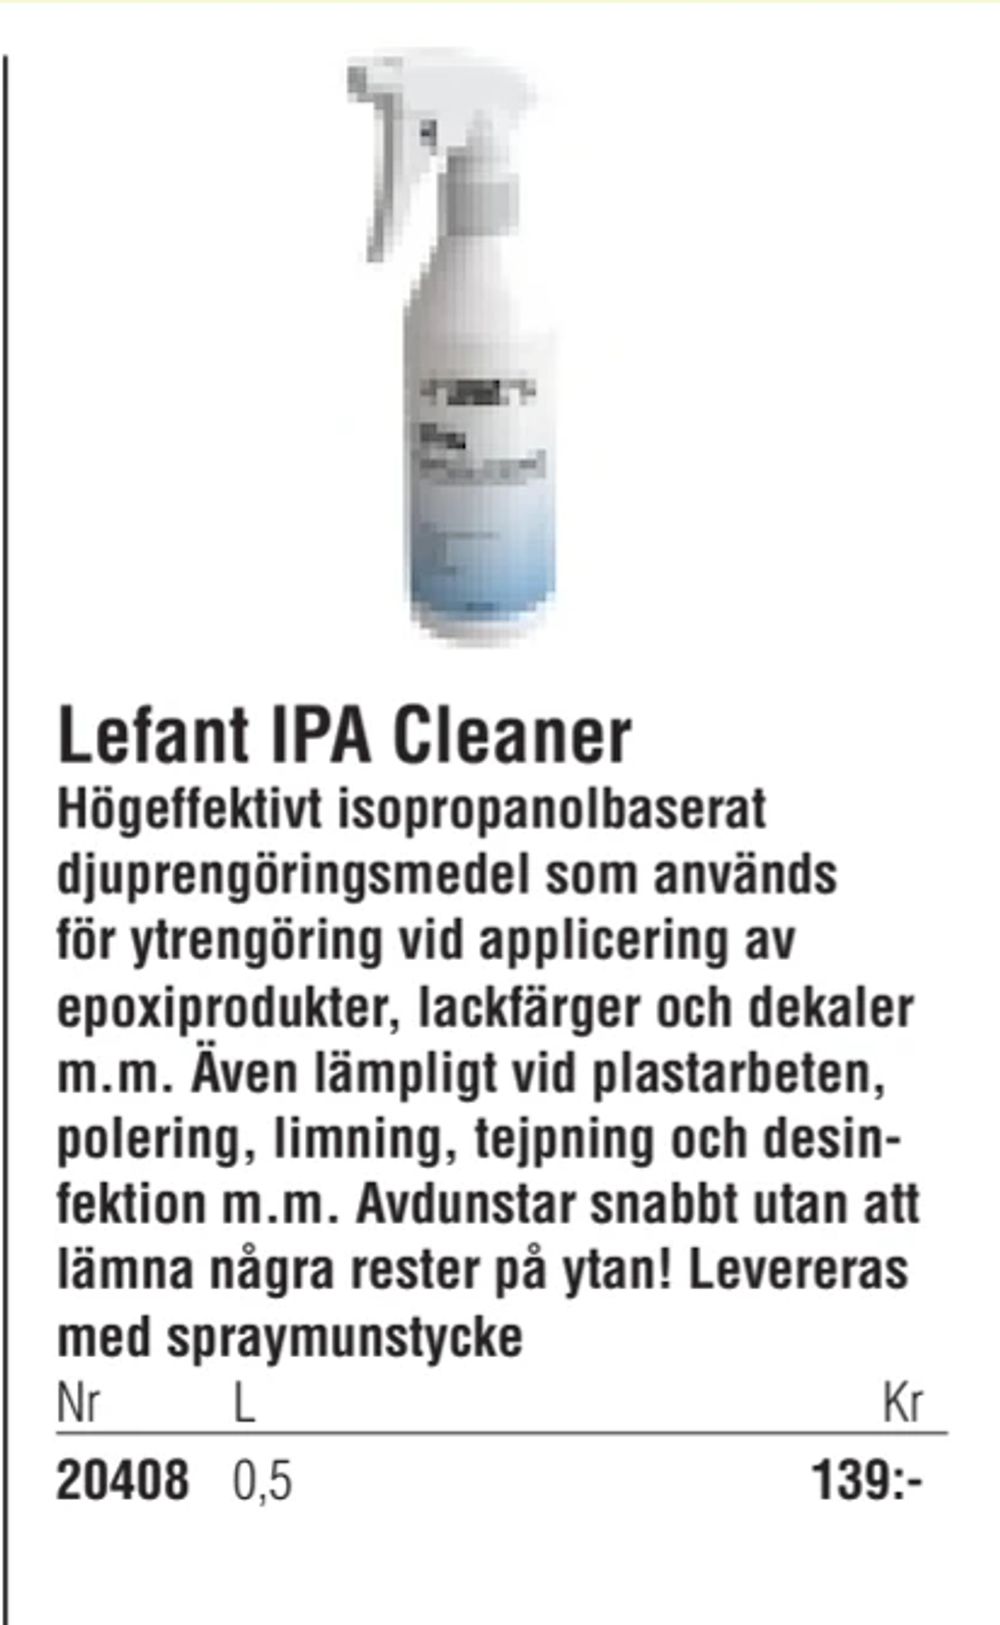 Erbjudanden på Lefant IPA Cleaner från Erlandsons Brygga för 139 kr